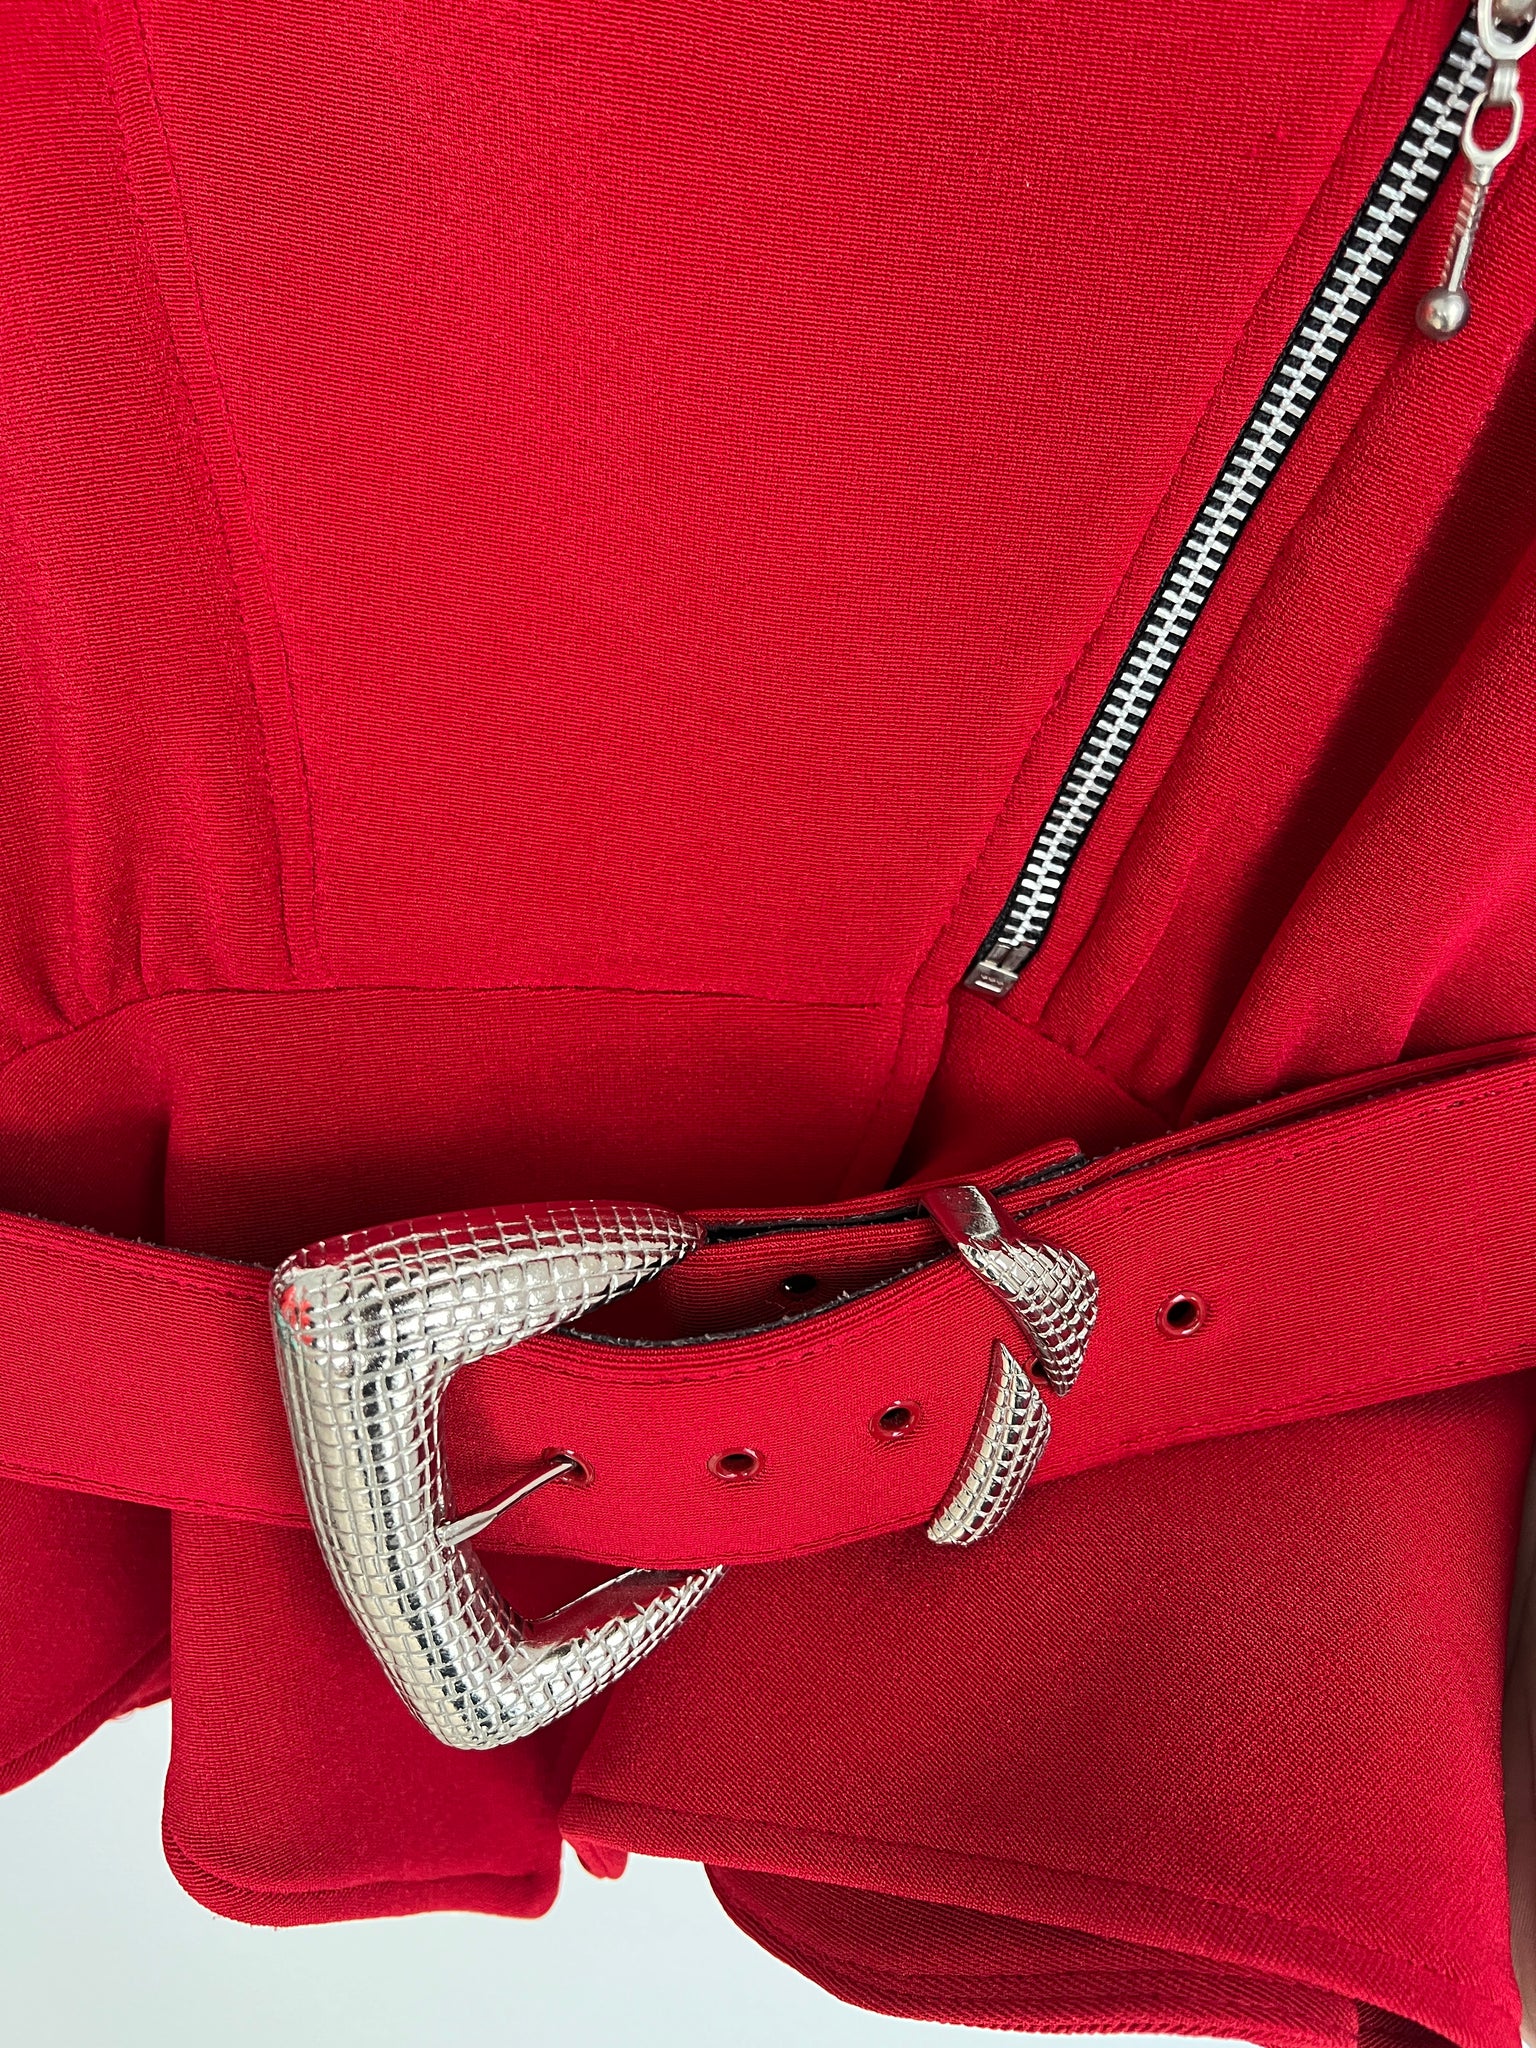 1980s JACKET- Tadashi Red studded motorcycle jacket w/ belt